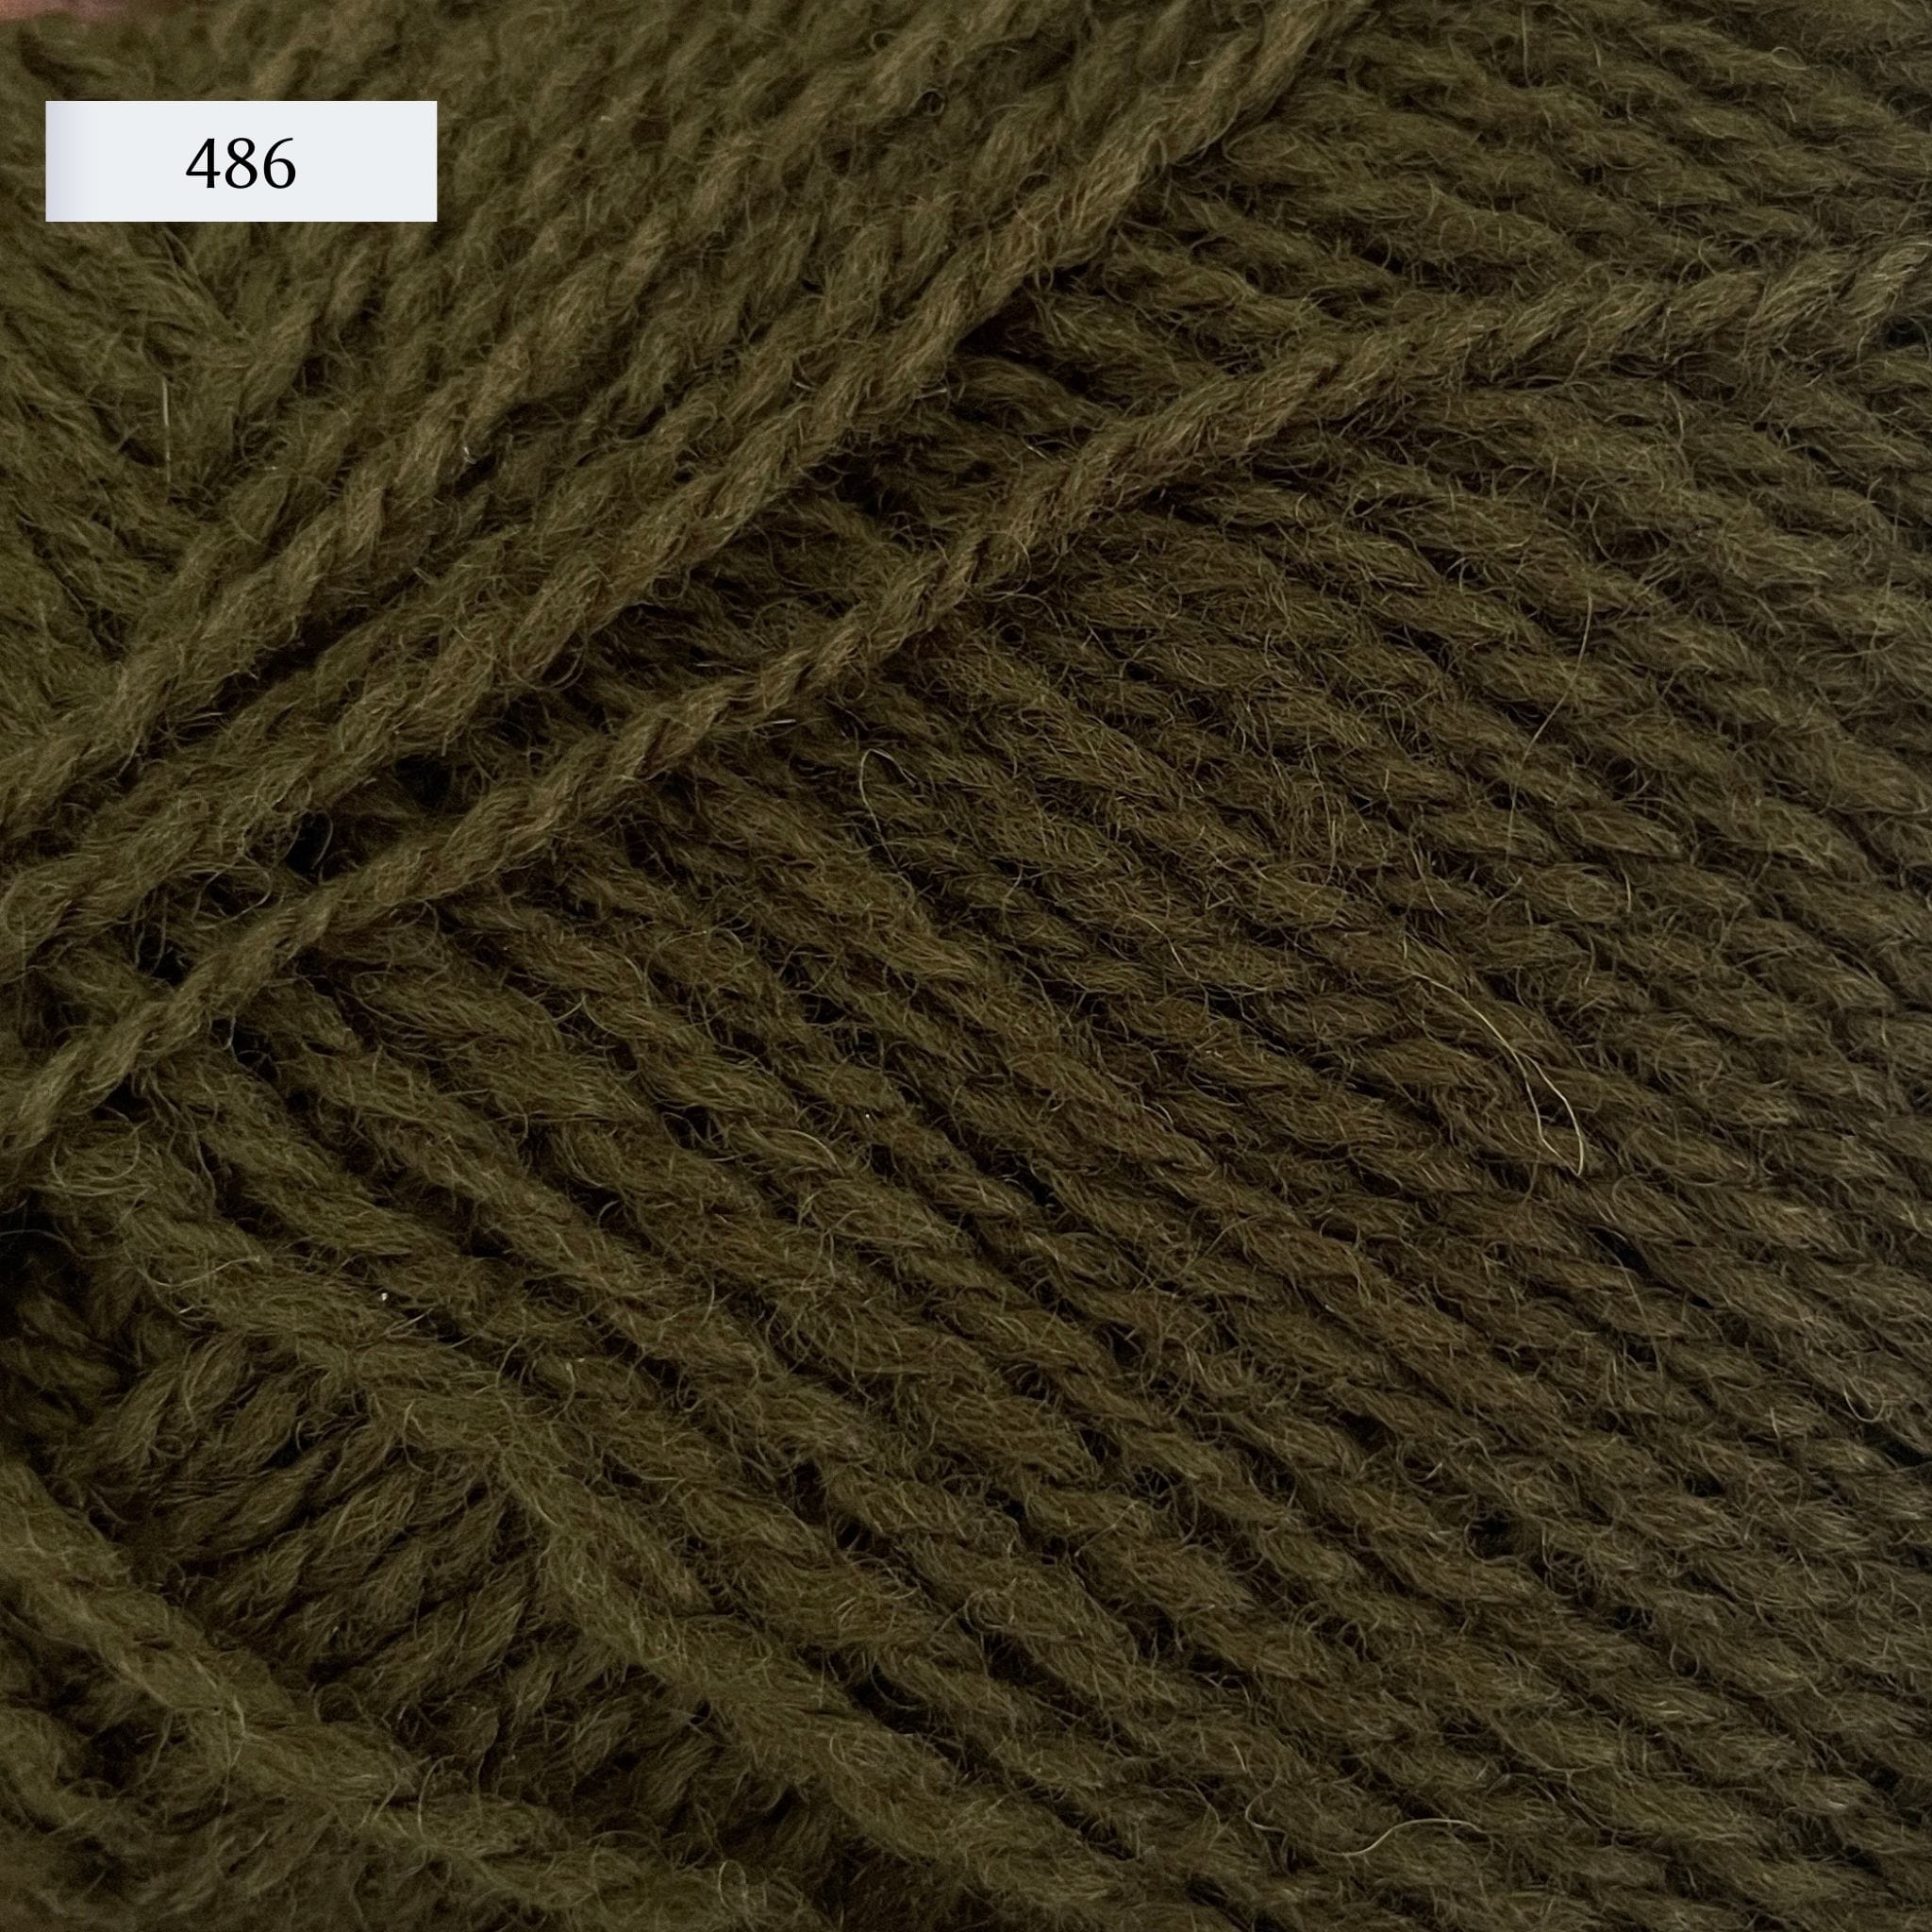 Rauma Finullgarn, a fingering/sport weight yarn, in color 486, a dark army green